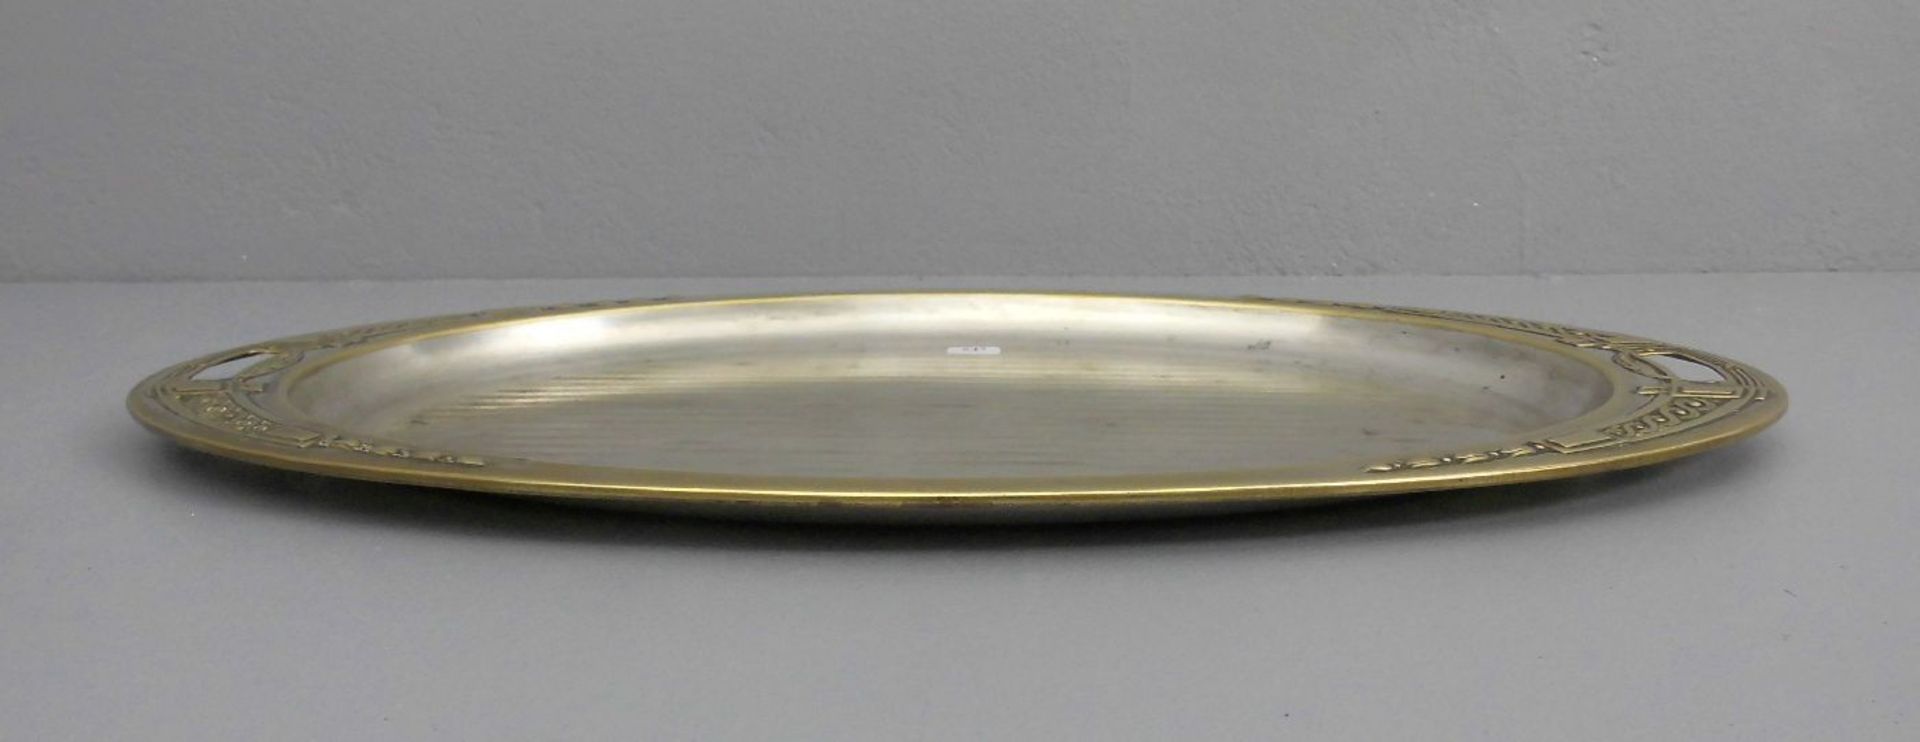 JUGENDSTIL - TABLETT / Art nouveau tray, versilbertes Metall, um 1900. Ovale Form mit seitlichen - Image 2 of 3